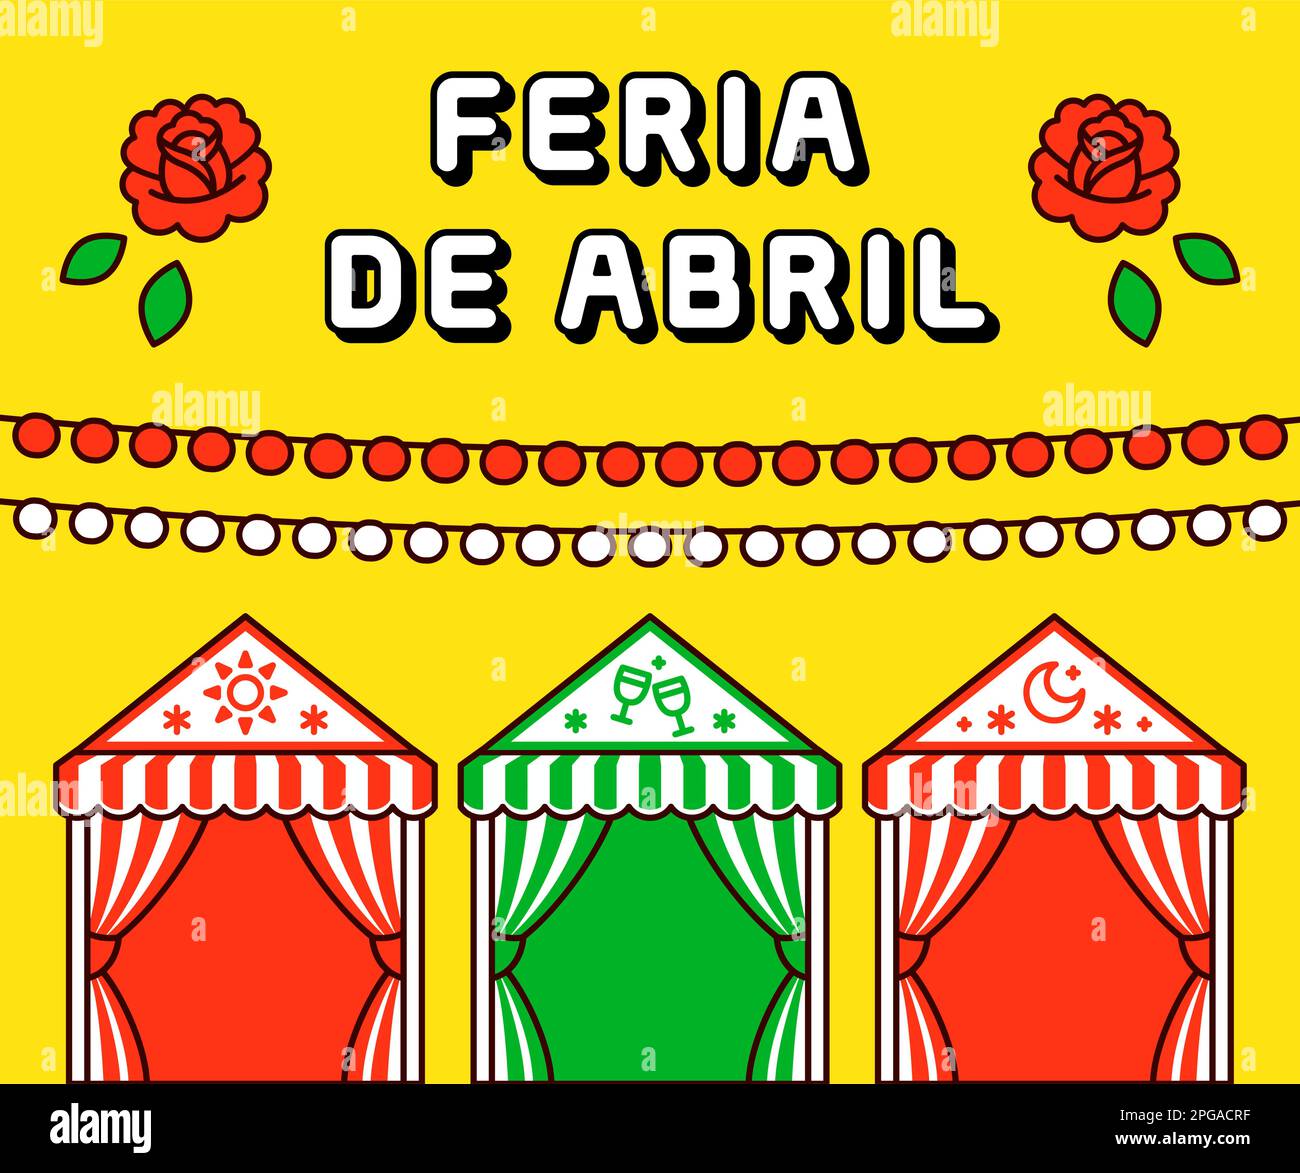 Feria de Abril (espagnol pour la foire d'avril) Festival traditionnel à Séville, Espagne. Affiche de dessin animé plate avec lanternes et casetas. Clip art vectoriel Illustration de Vecteur